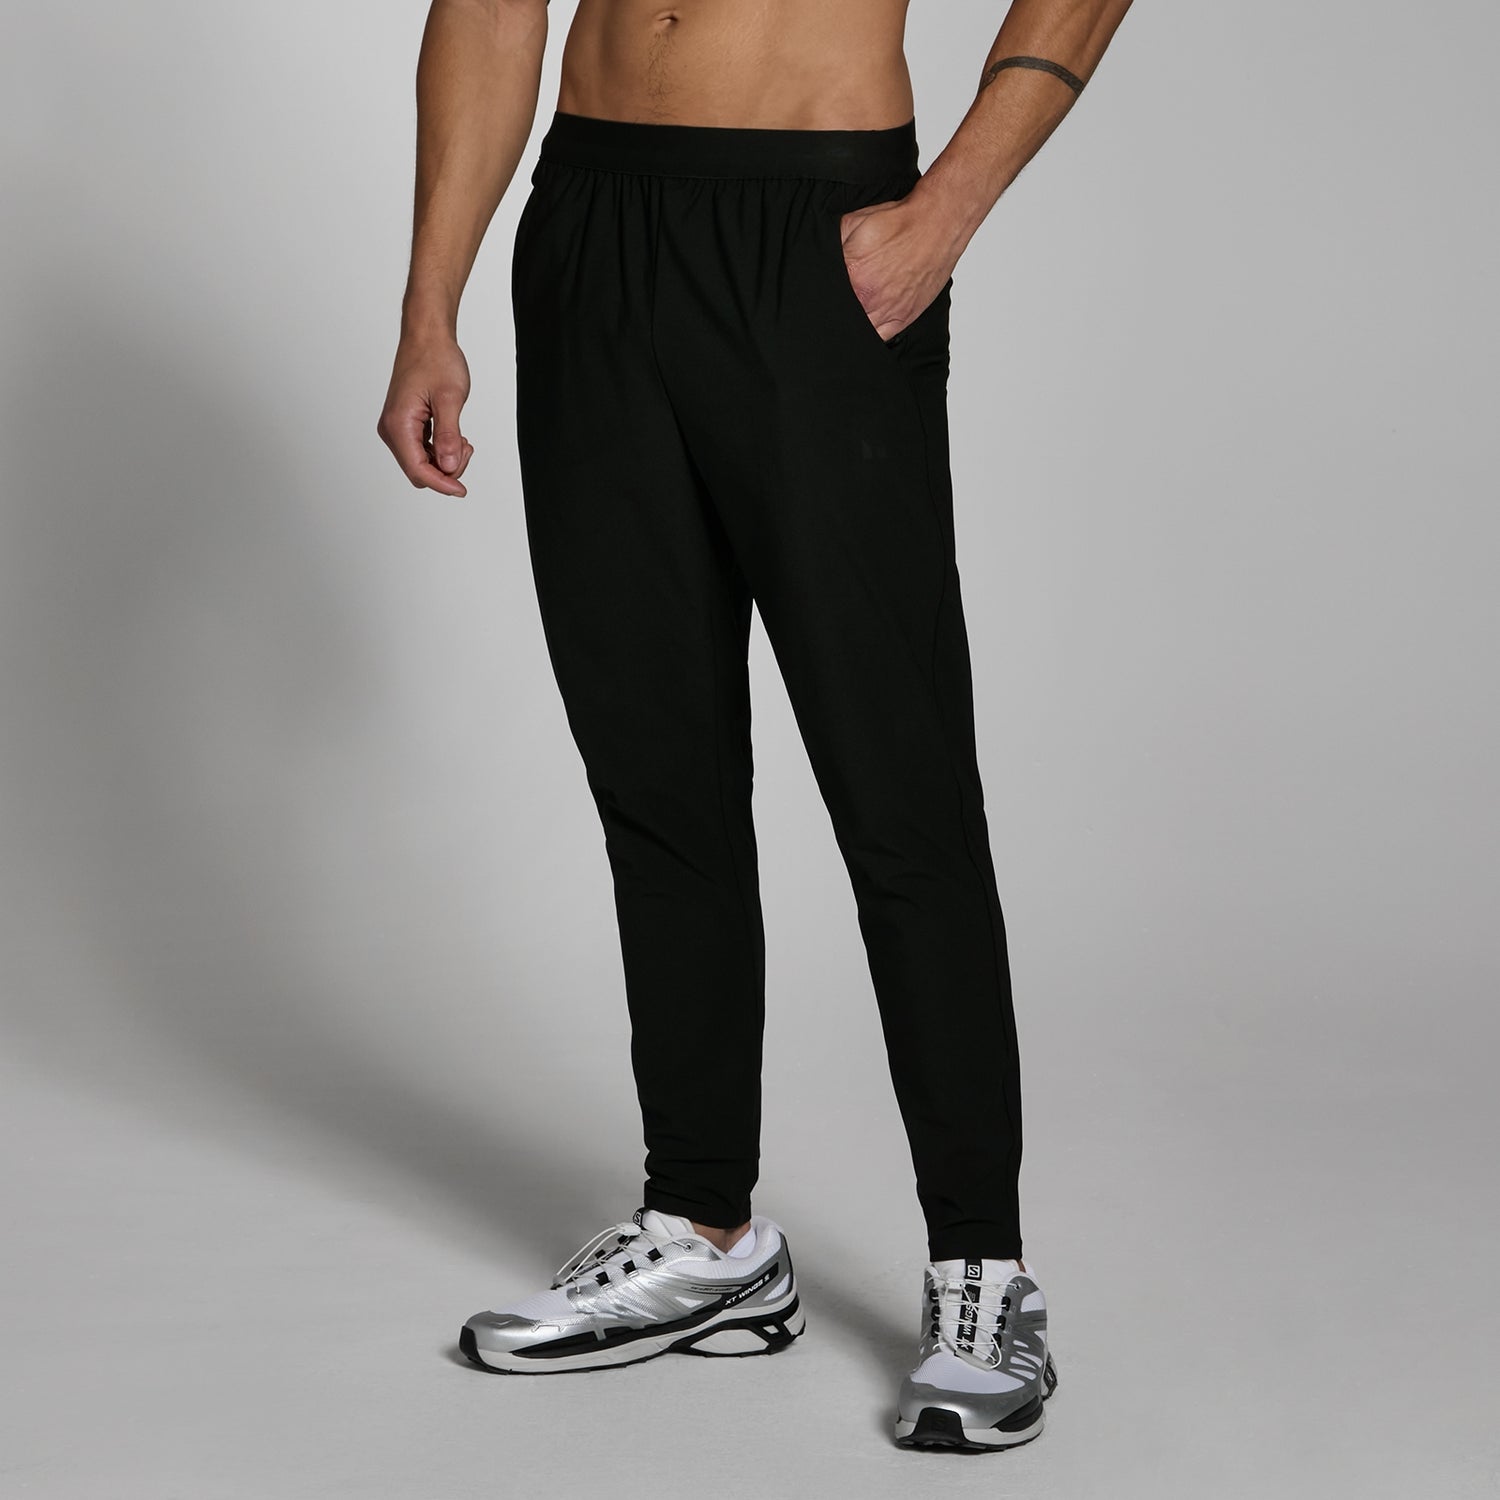 Pantalón deportivo tejido Lifestyle para hombre de MP - Negro - XS